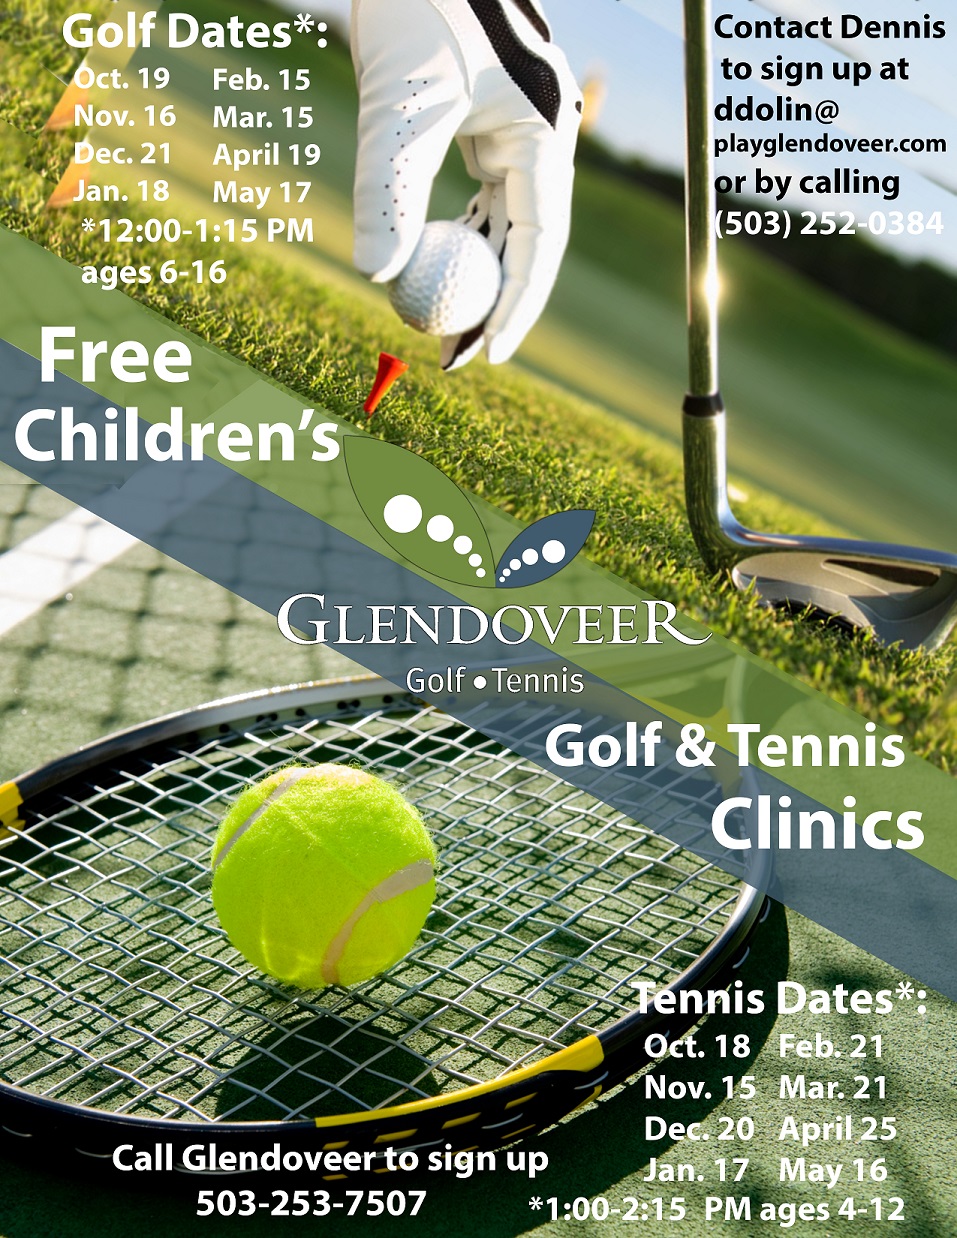 Golf-Tennis Clinics Glendoveer Golf